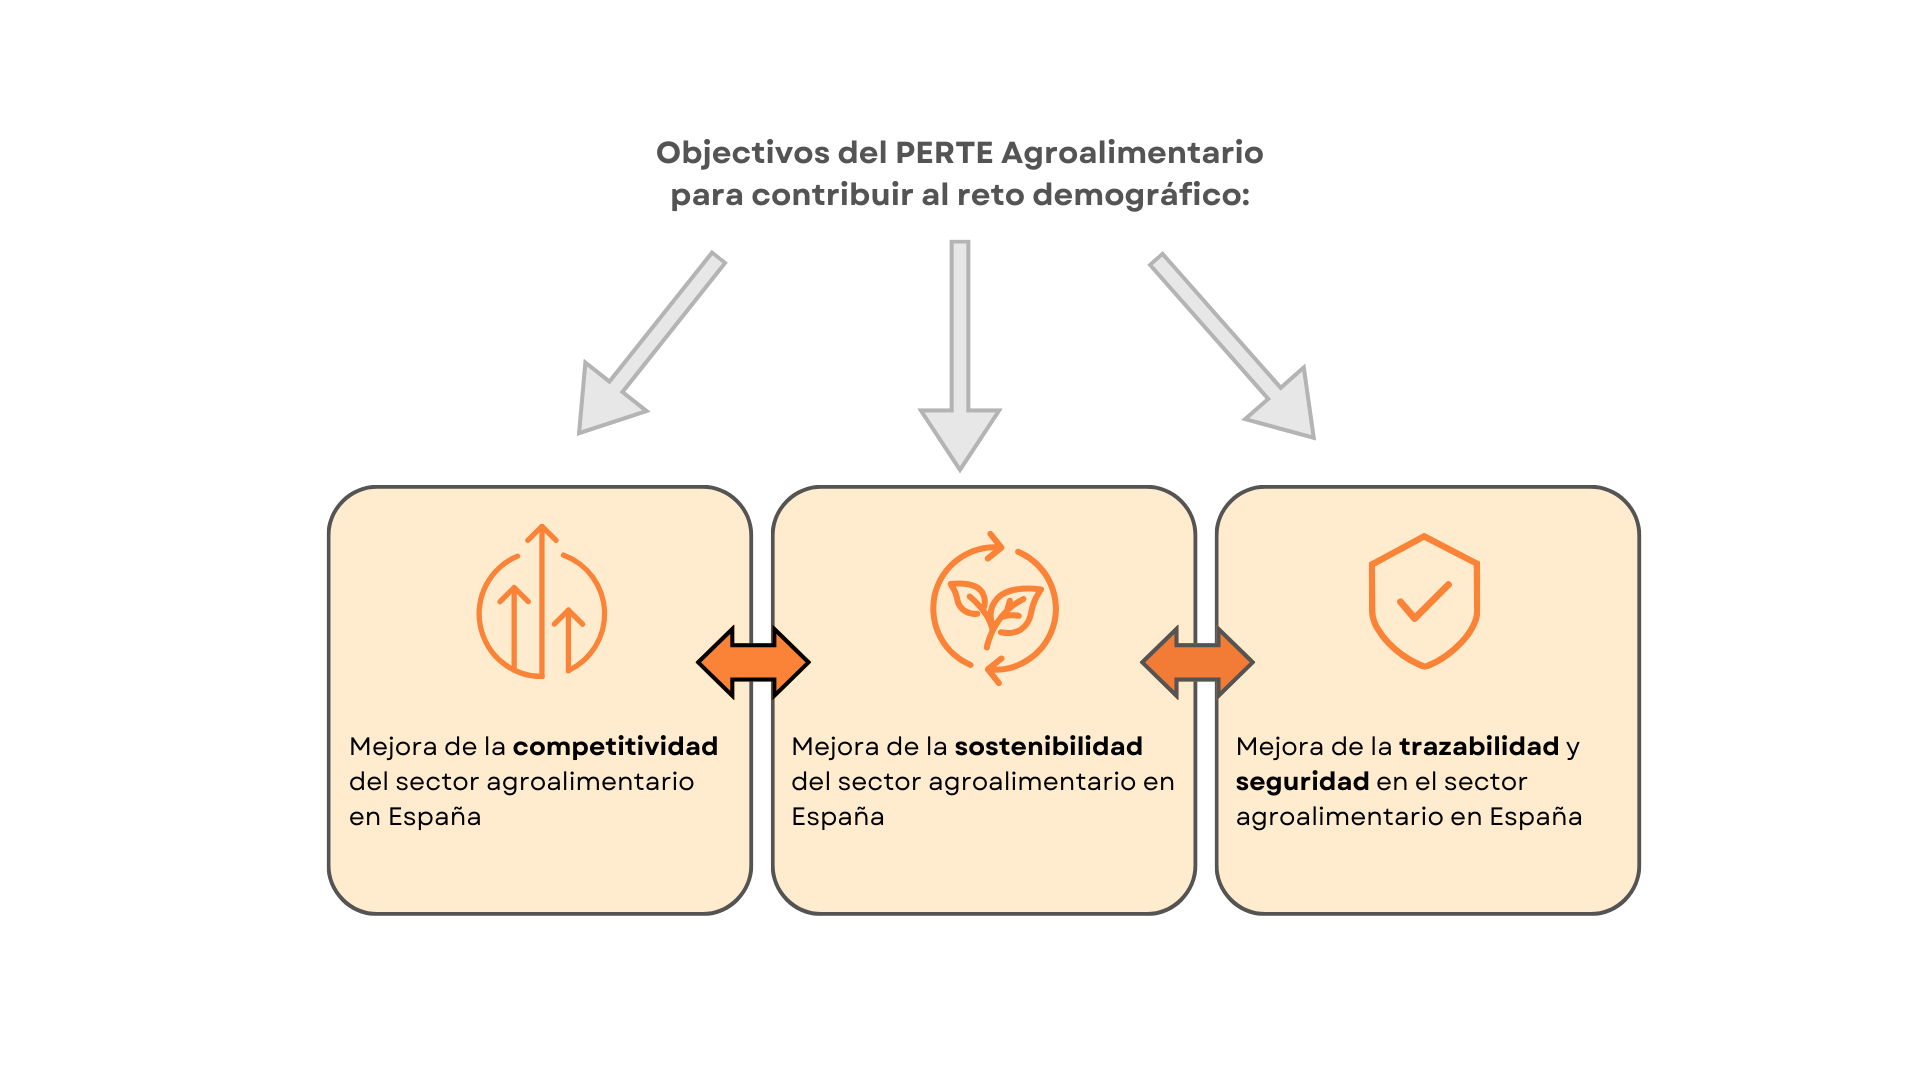 3 Objetivos del PERTE Agroalimentario: Competitividad, Sostenibilidad, Trazabilidad y seguridad.